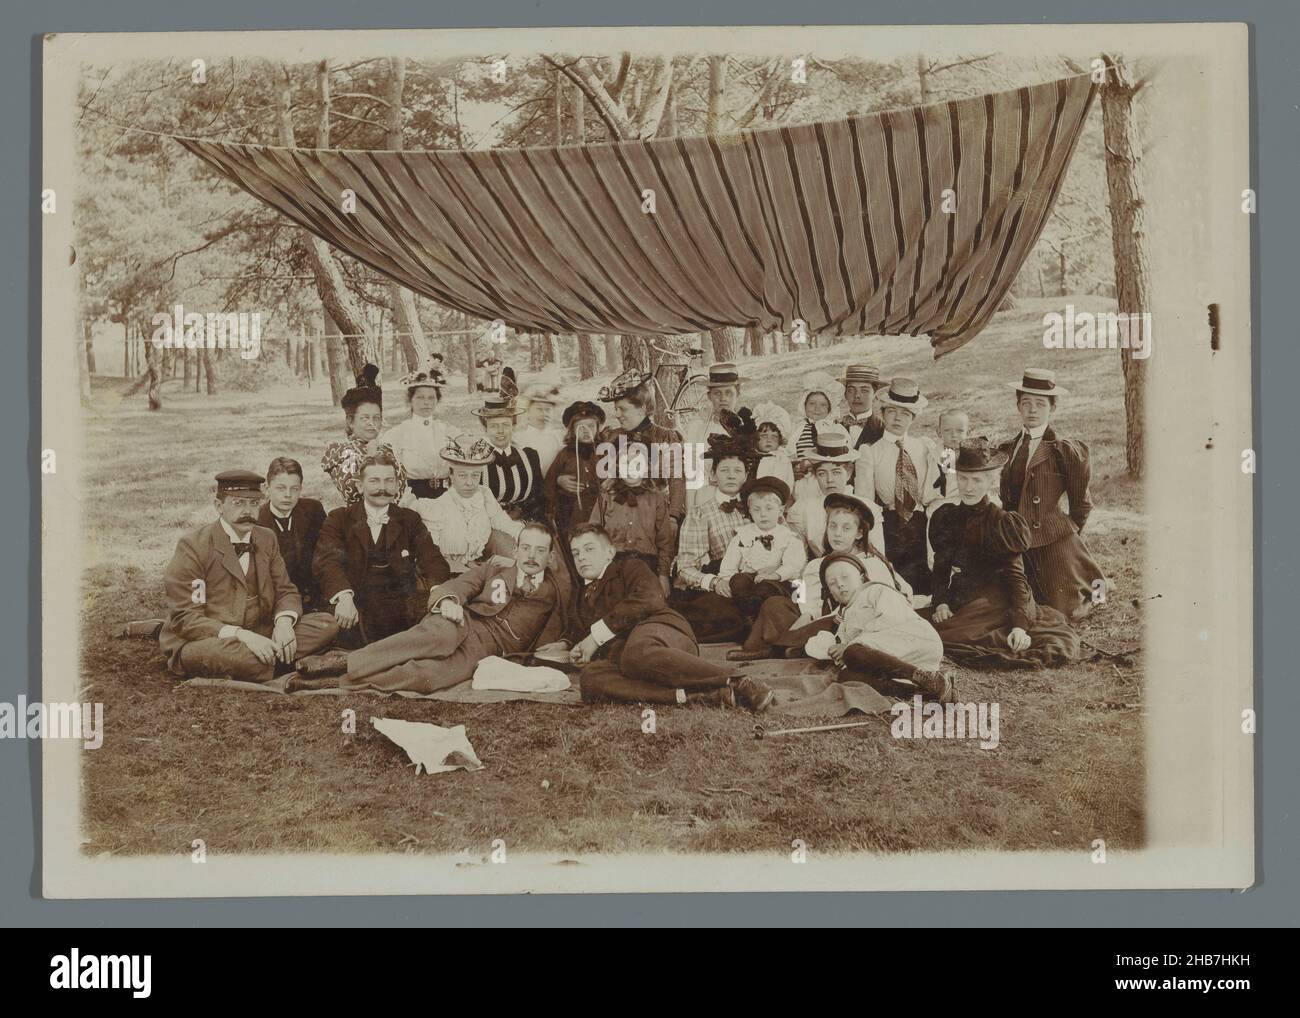 Ritratto di gruppo della famiglia Geertsema con Karel van den Berg e Frans e Poppie van den Berg e altri, seduti sull'erba nei boschi sotto una tenda a strisce, A.C.M. Geertsema, (cerchio di), Paesi Bassi, c.. 1900 - c. 1901, supporto fotografico, altezza 180 mm x larghezza 126 mm Foto Stock